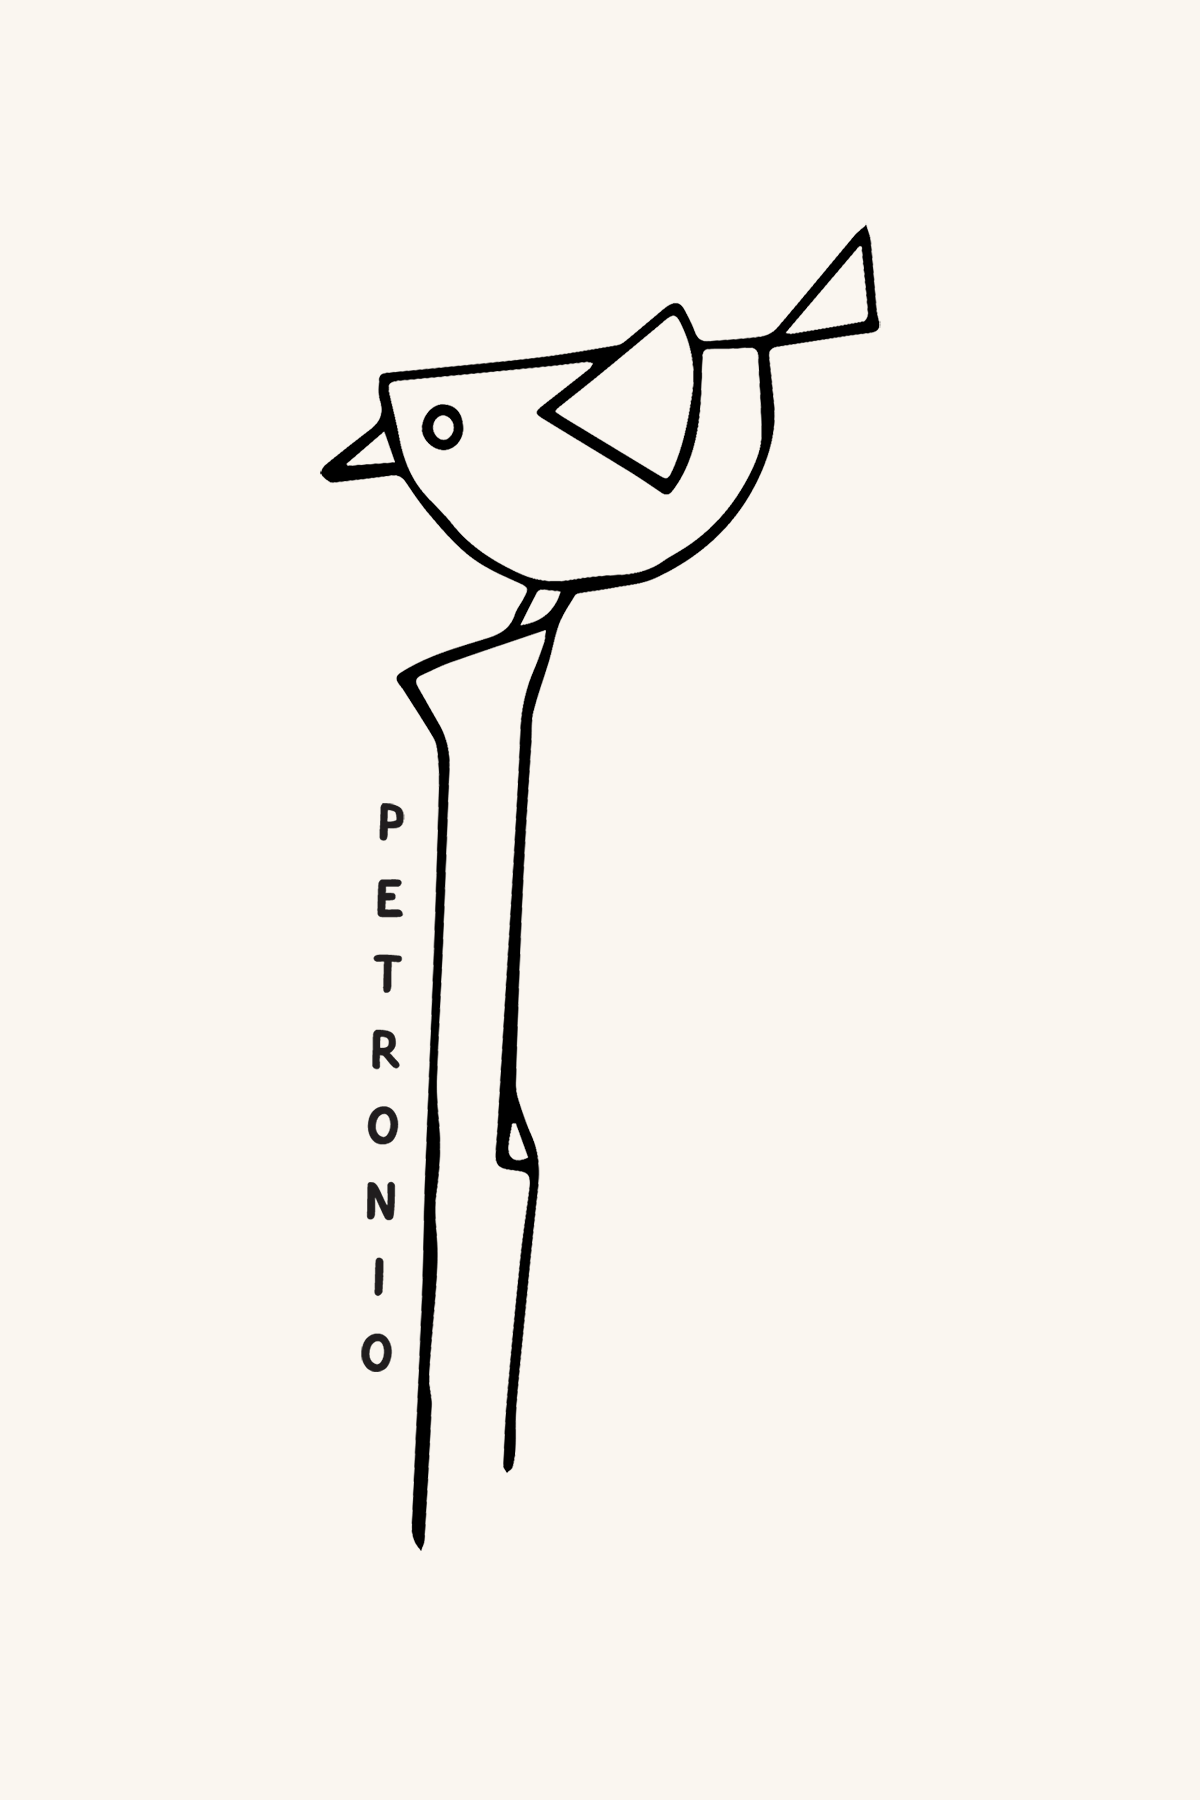 Dibujo de un pájaro encima de un palo